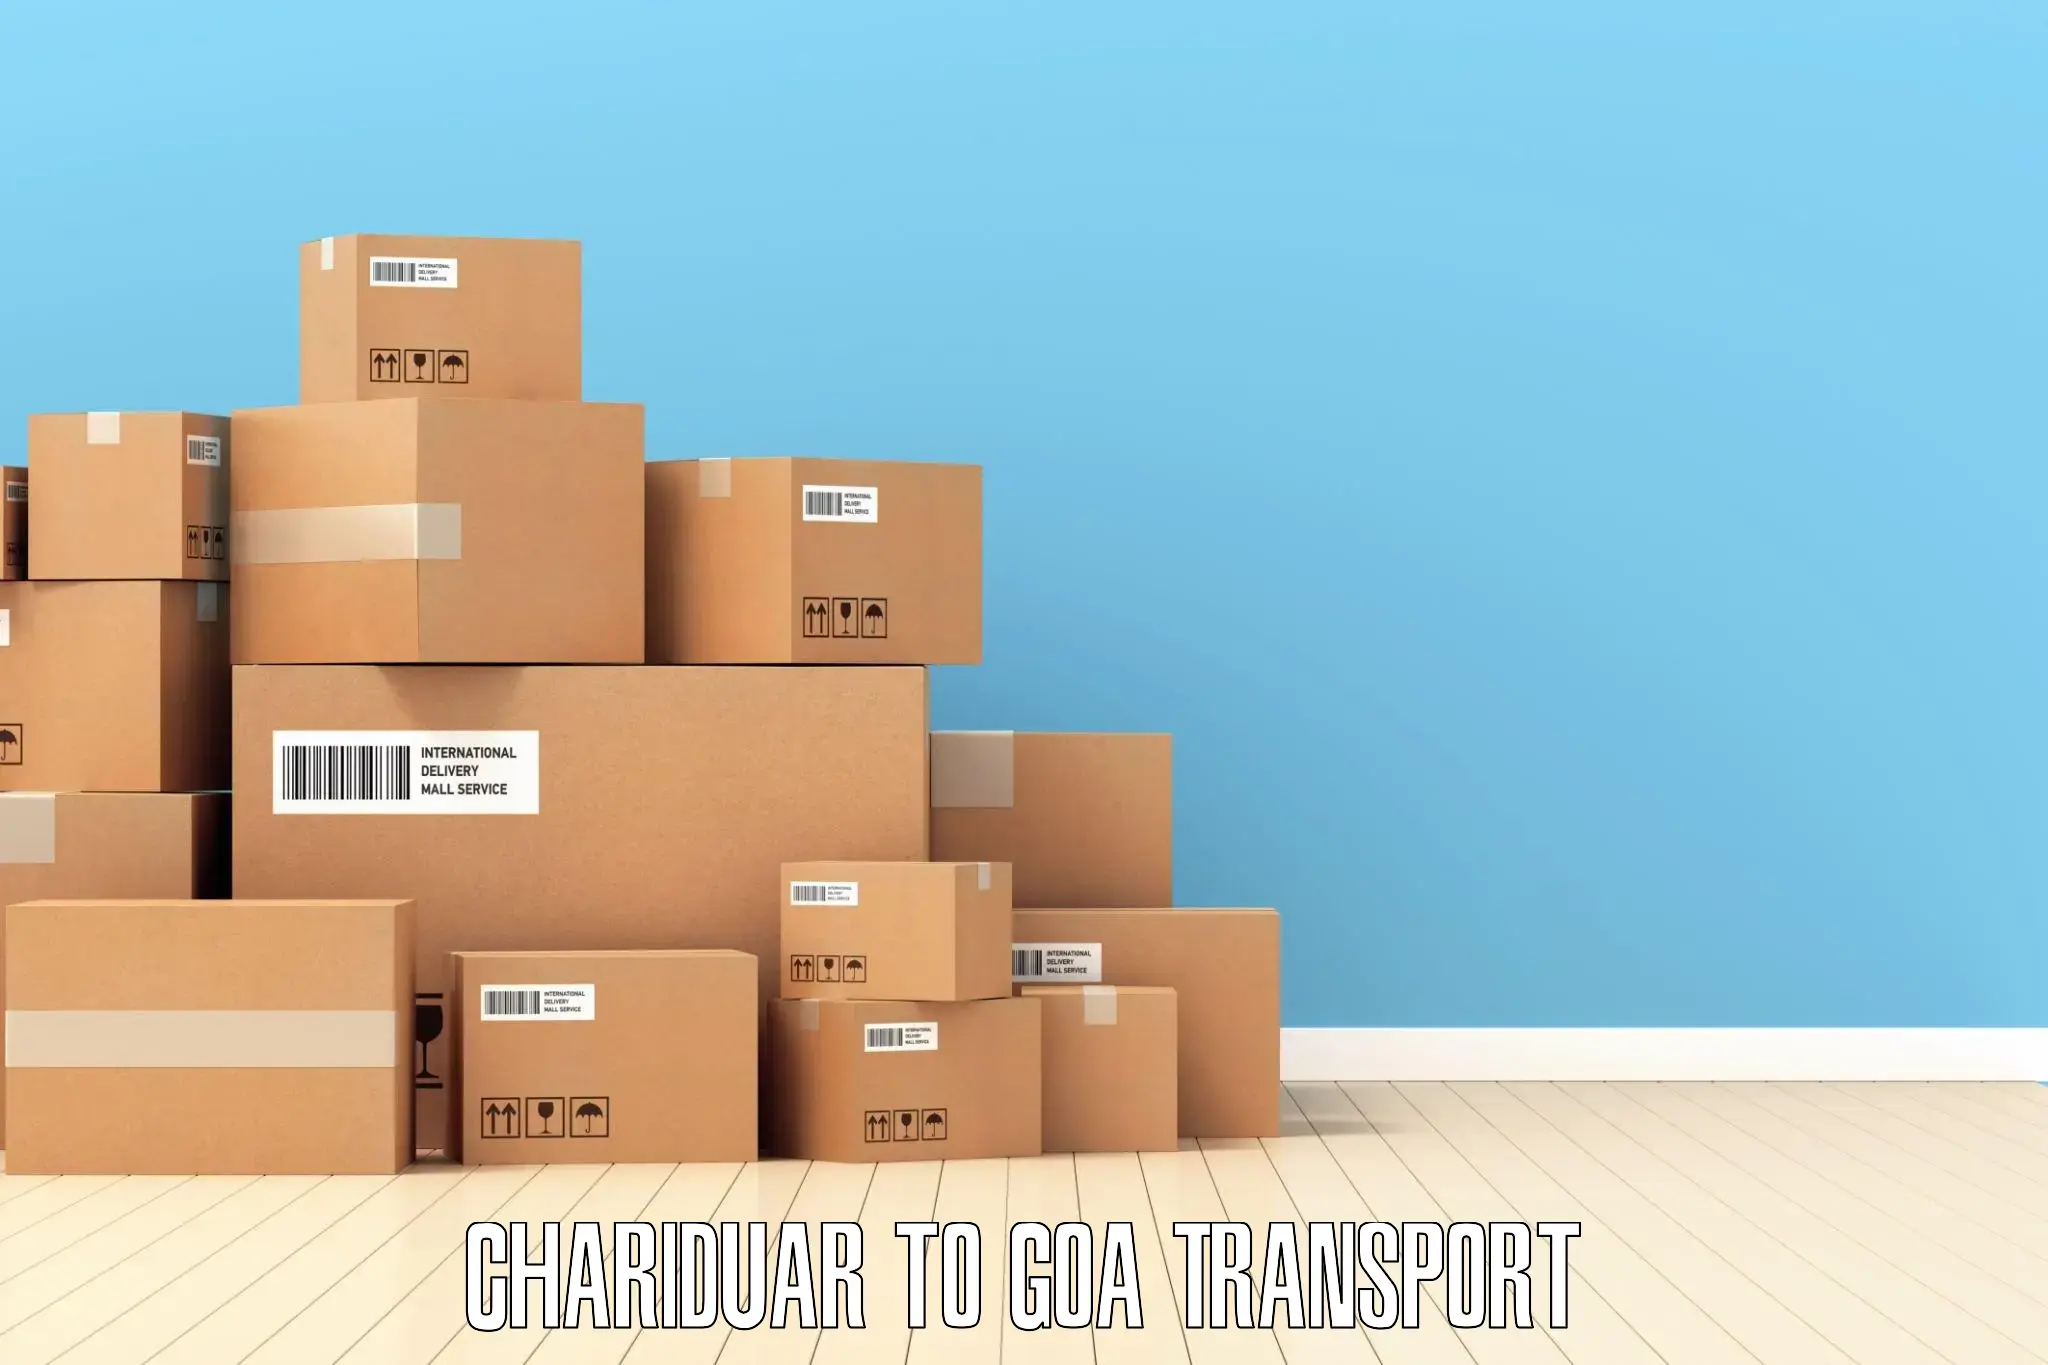 Daily parcel service transport Chariduar to Canacona